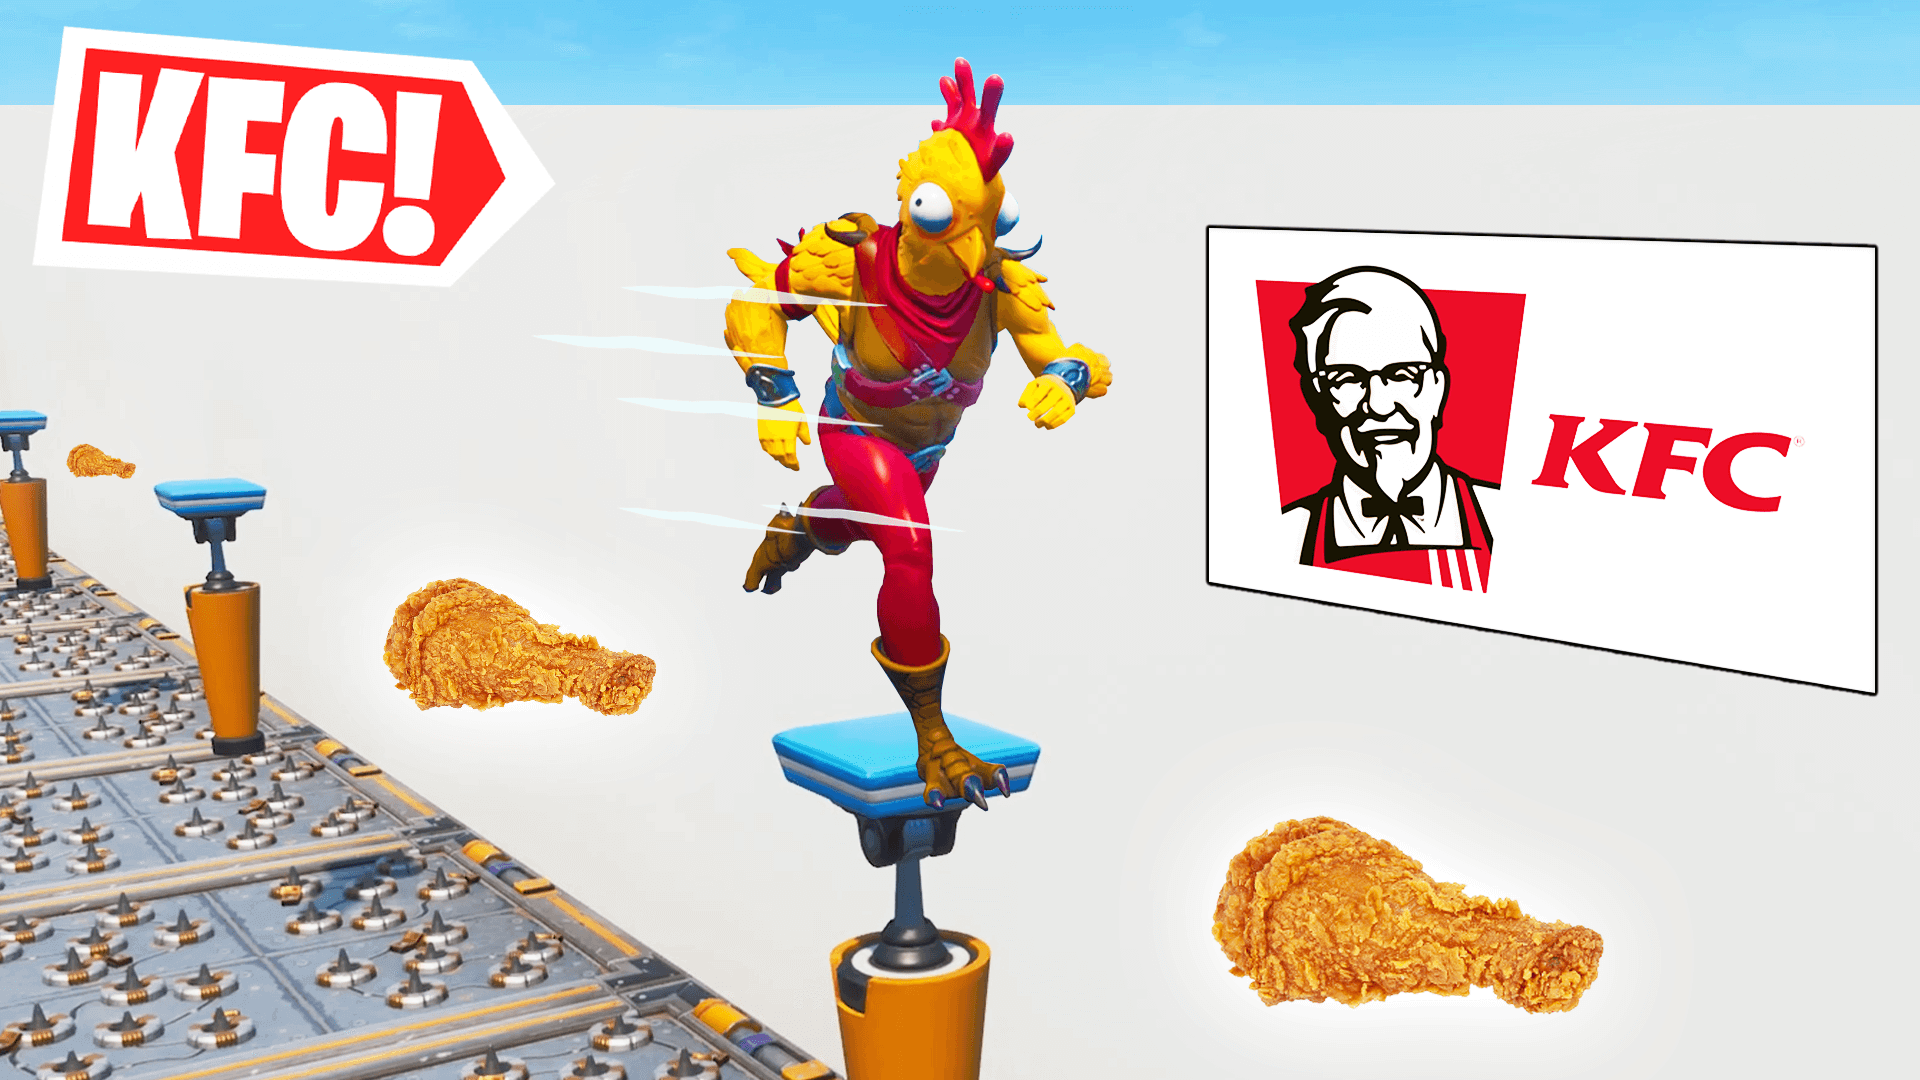 KFC DEATHRUN!